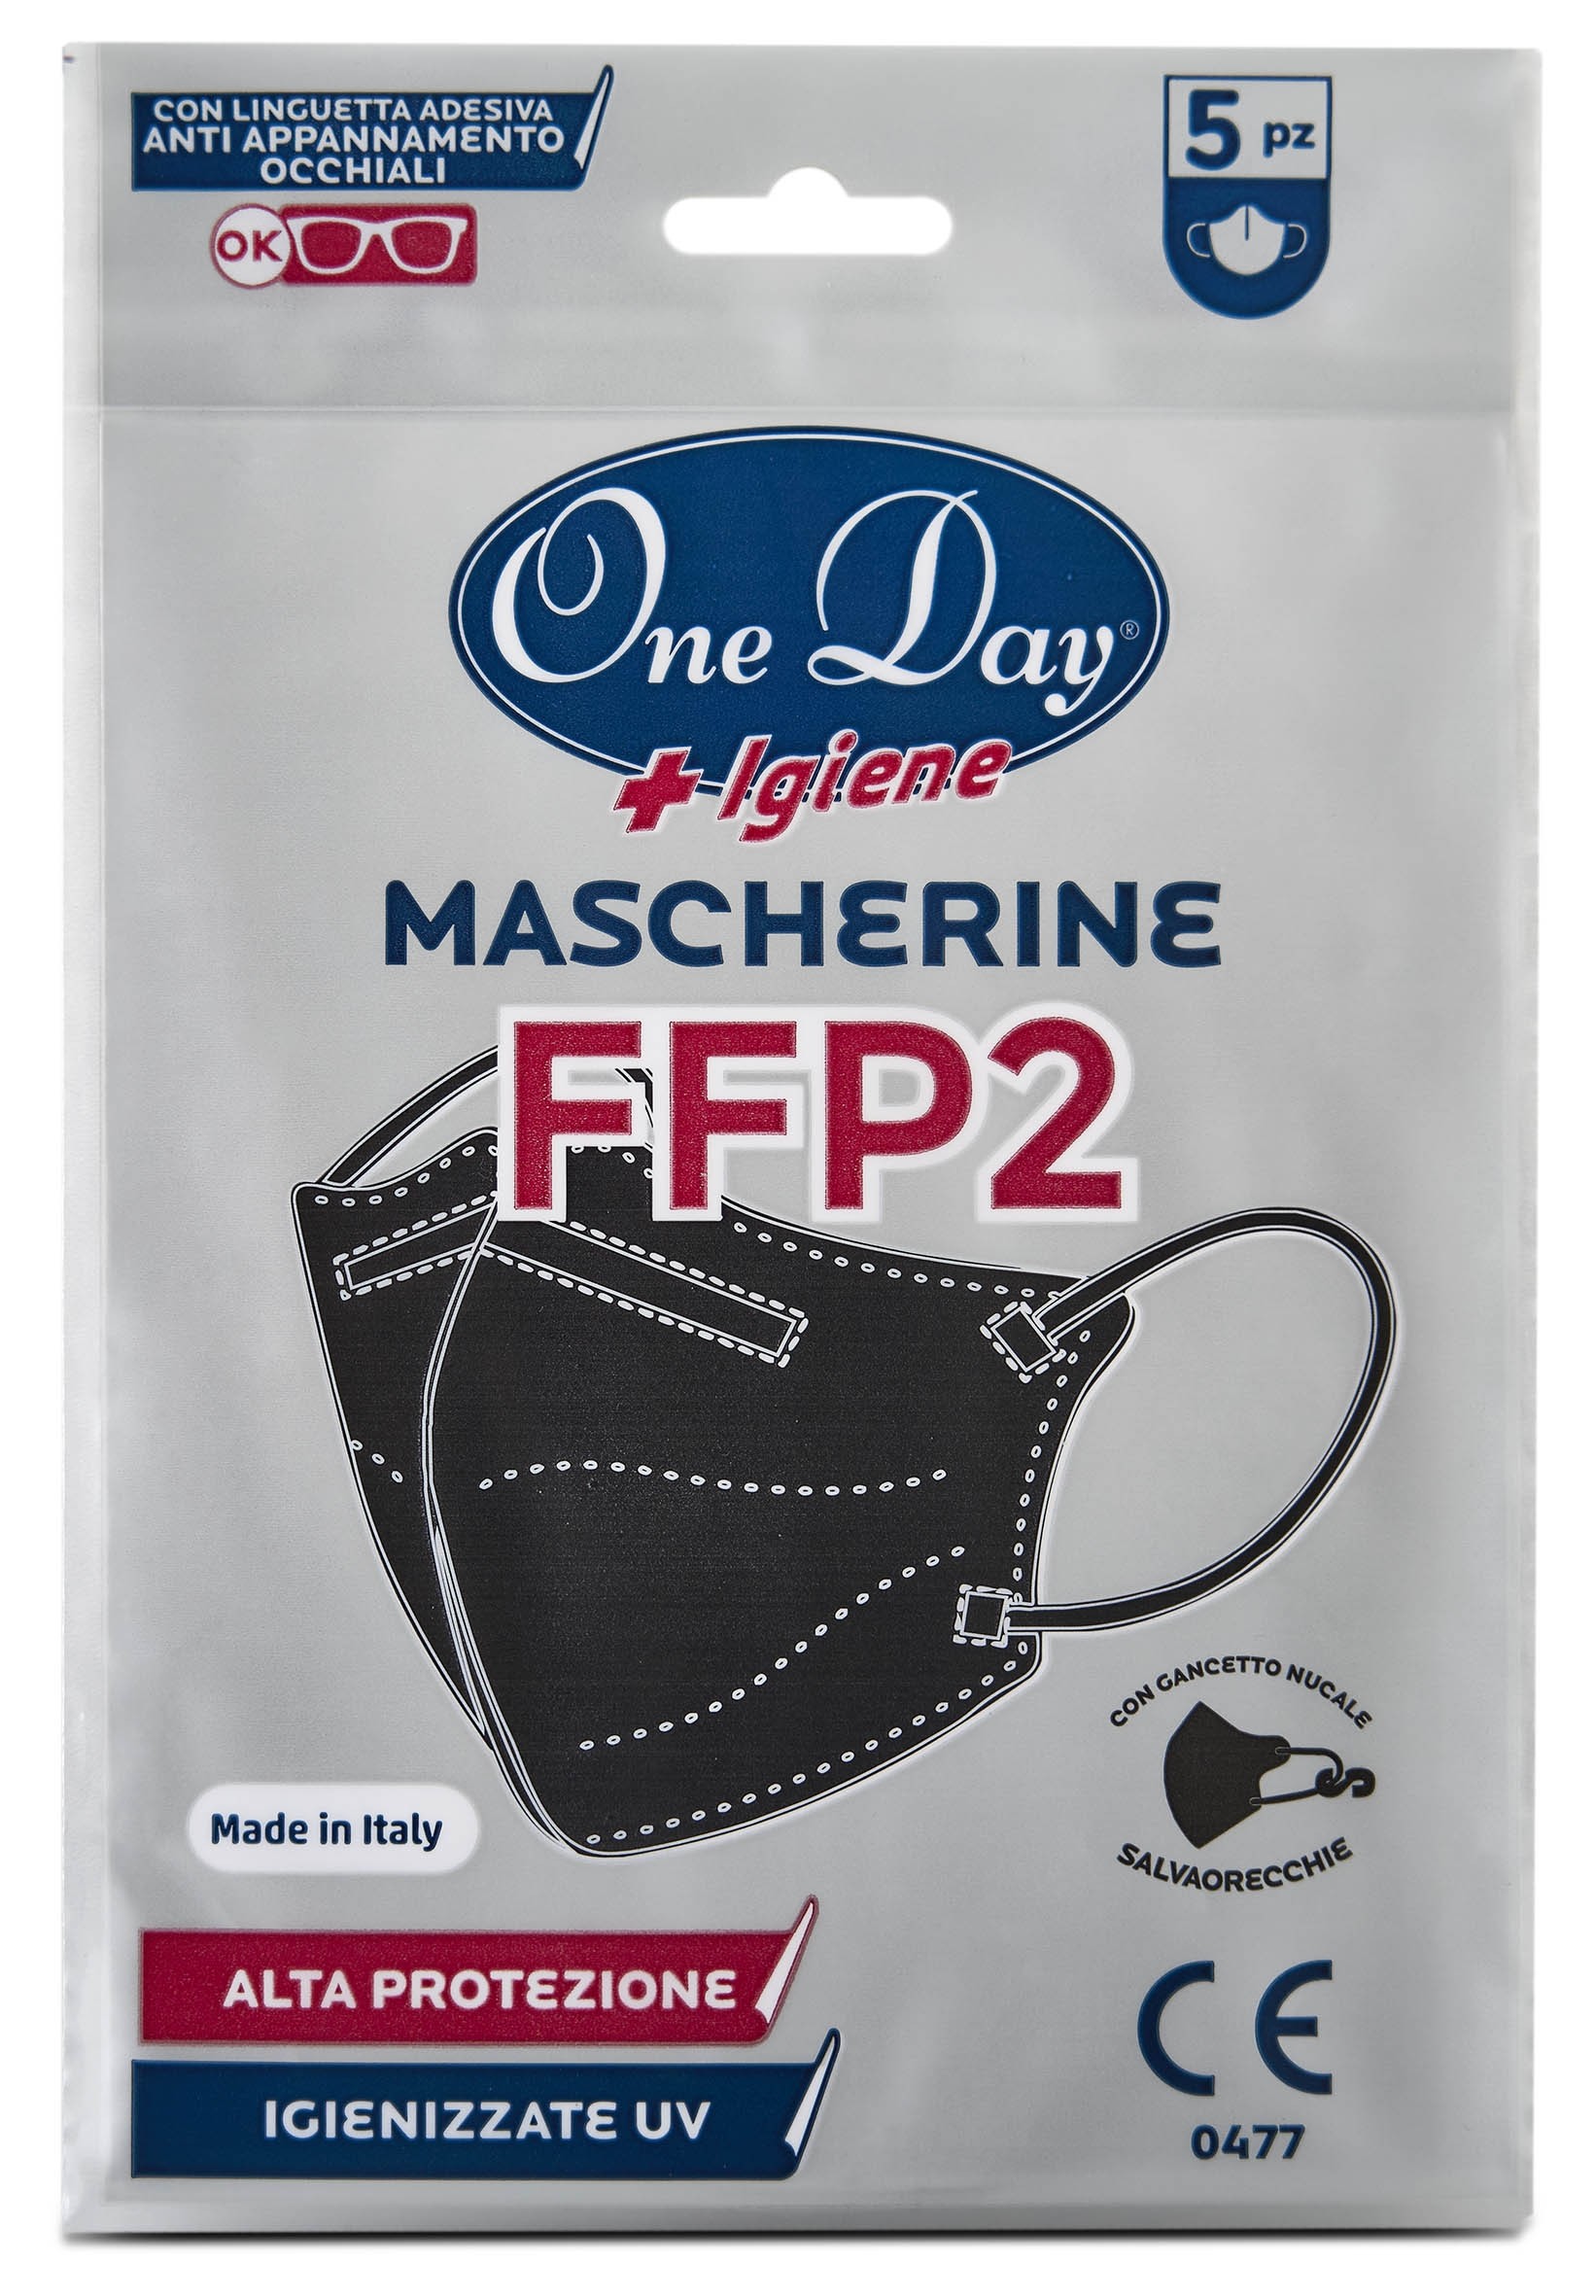 Superfive  Mascherine FFP2 Nere 5 Pezzi - Mascherine - One day igiene